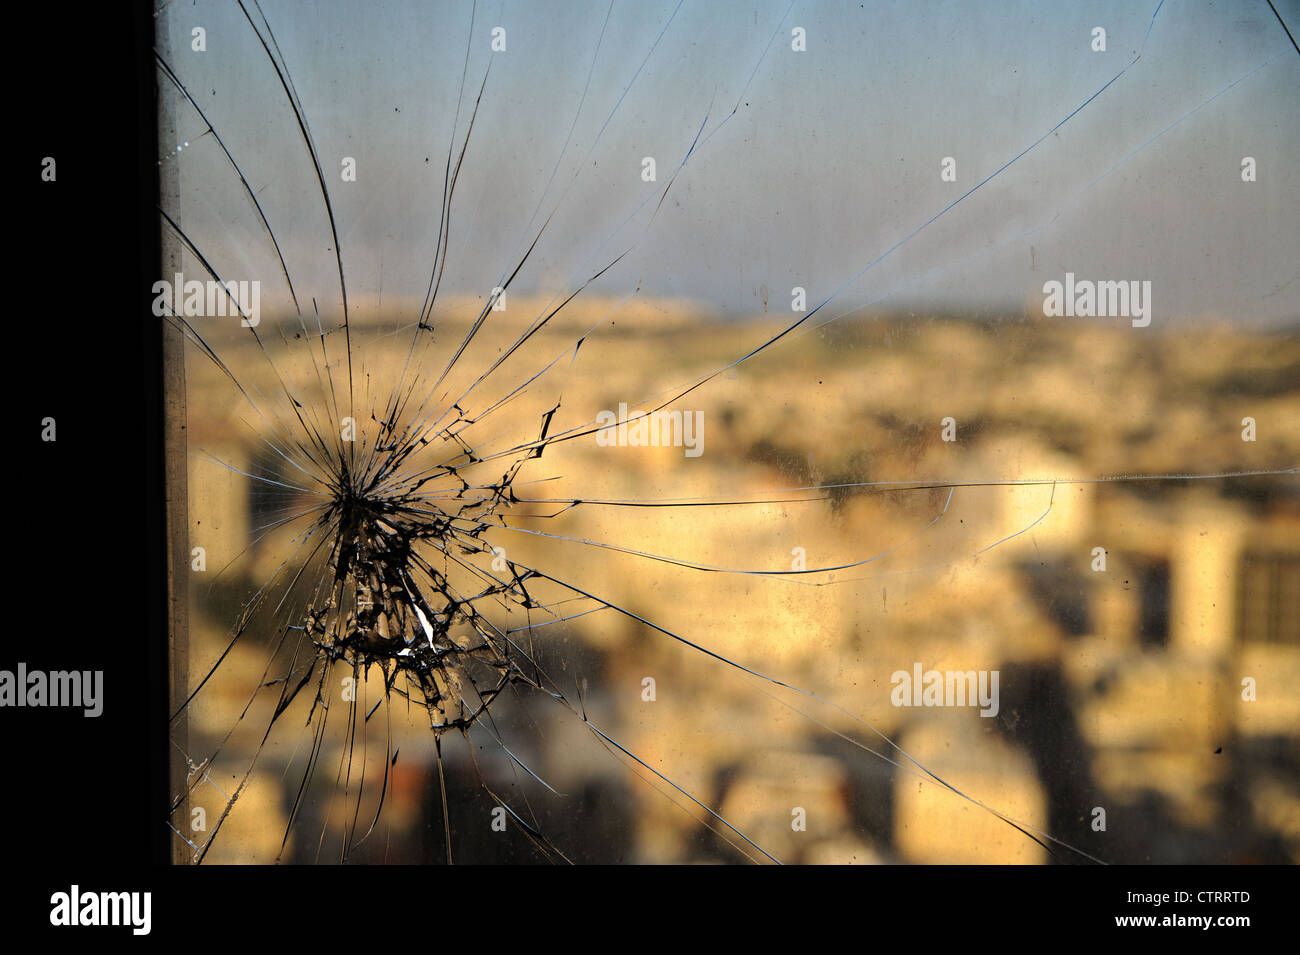 Zerbrochene Fenster, gebrochene Glas auf urbanistische Hintergrund Stockfoto